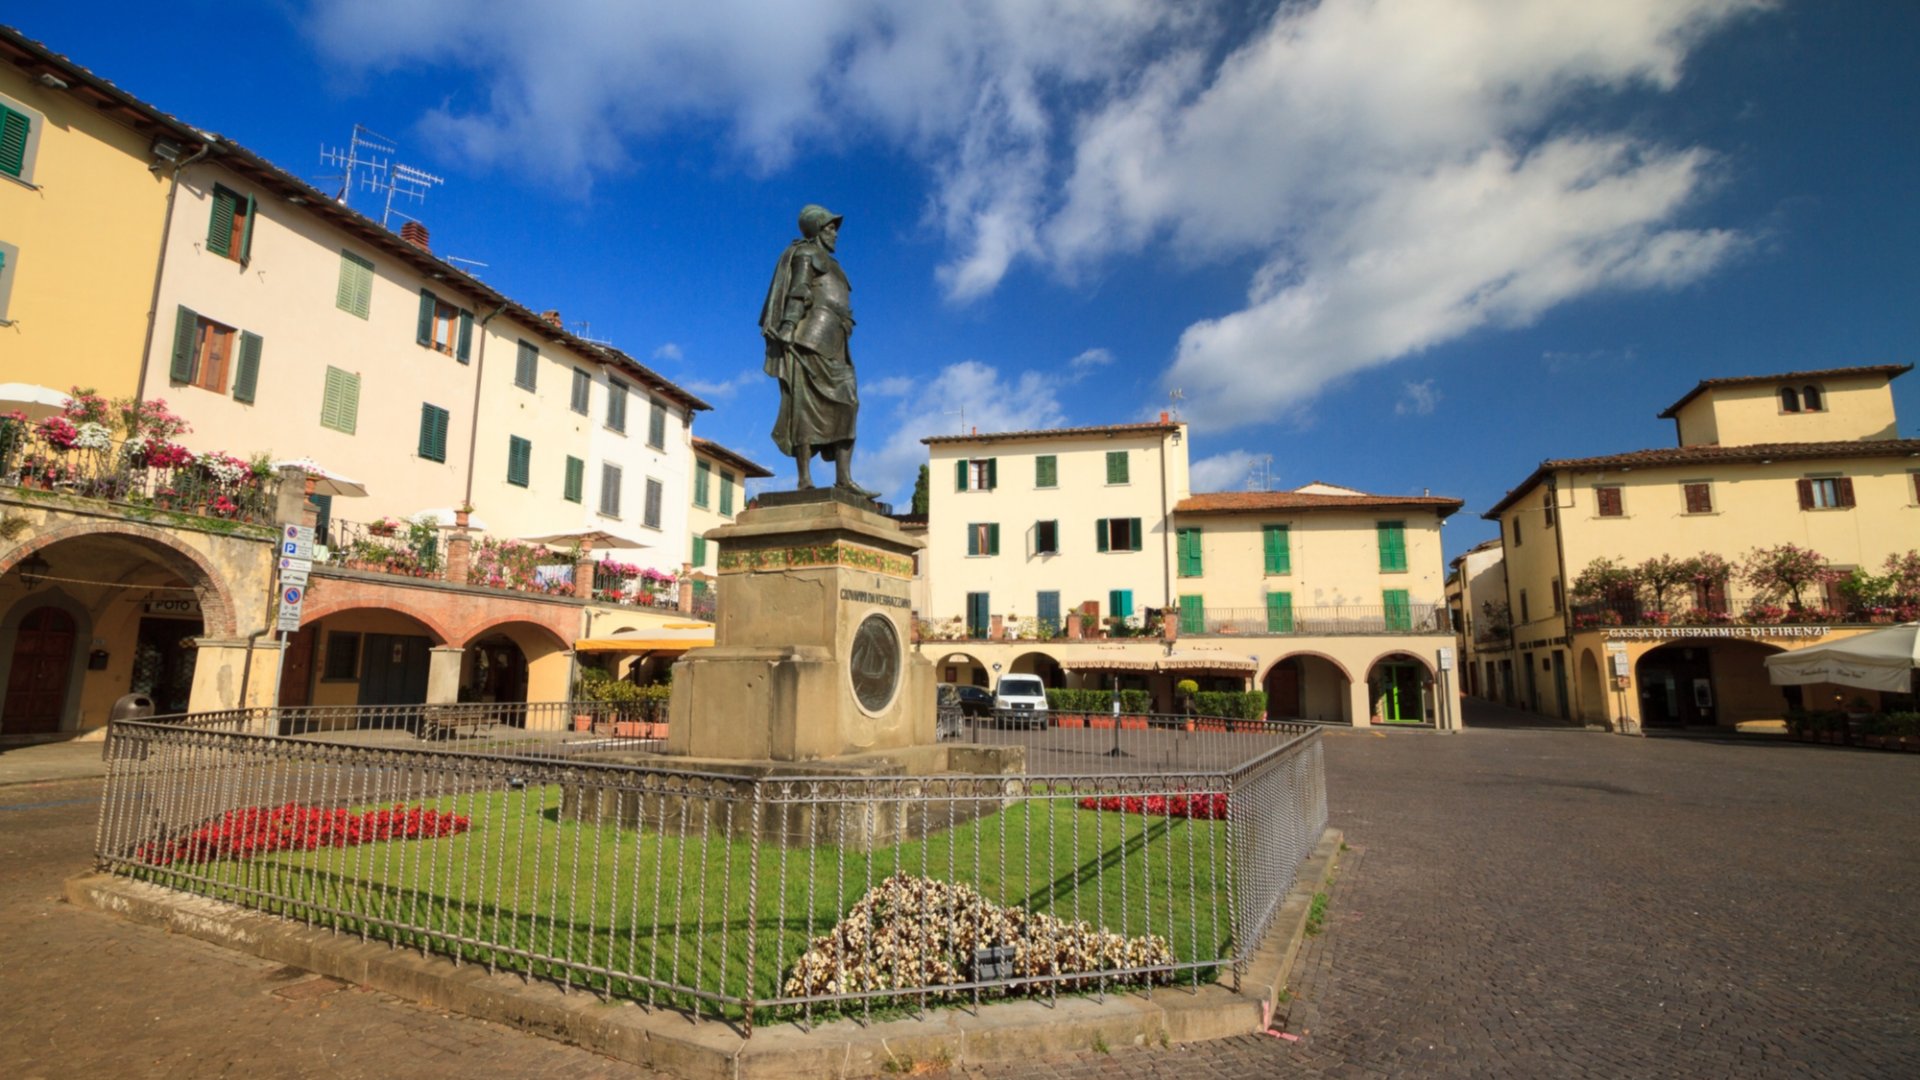 Der von Arkaden umgebene Hauptplatz von Greve mit der Statue von Giovanni da Verrazzano